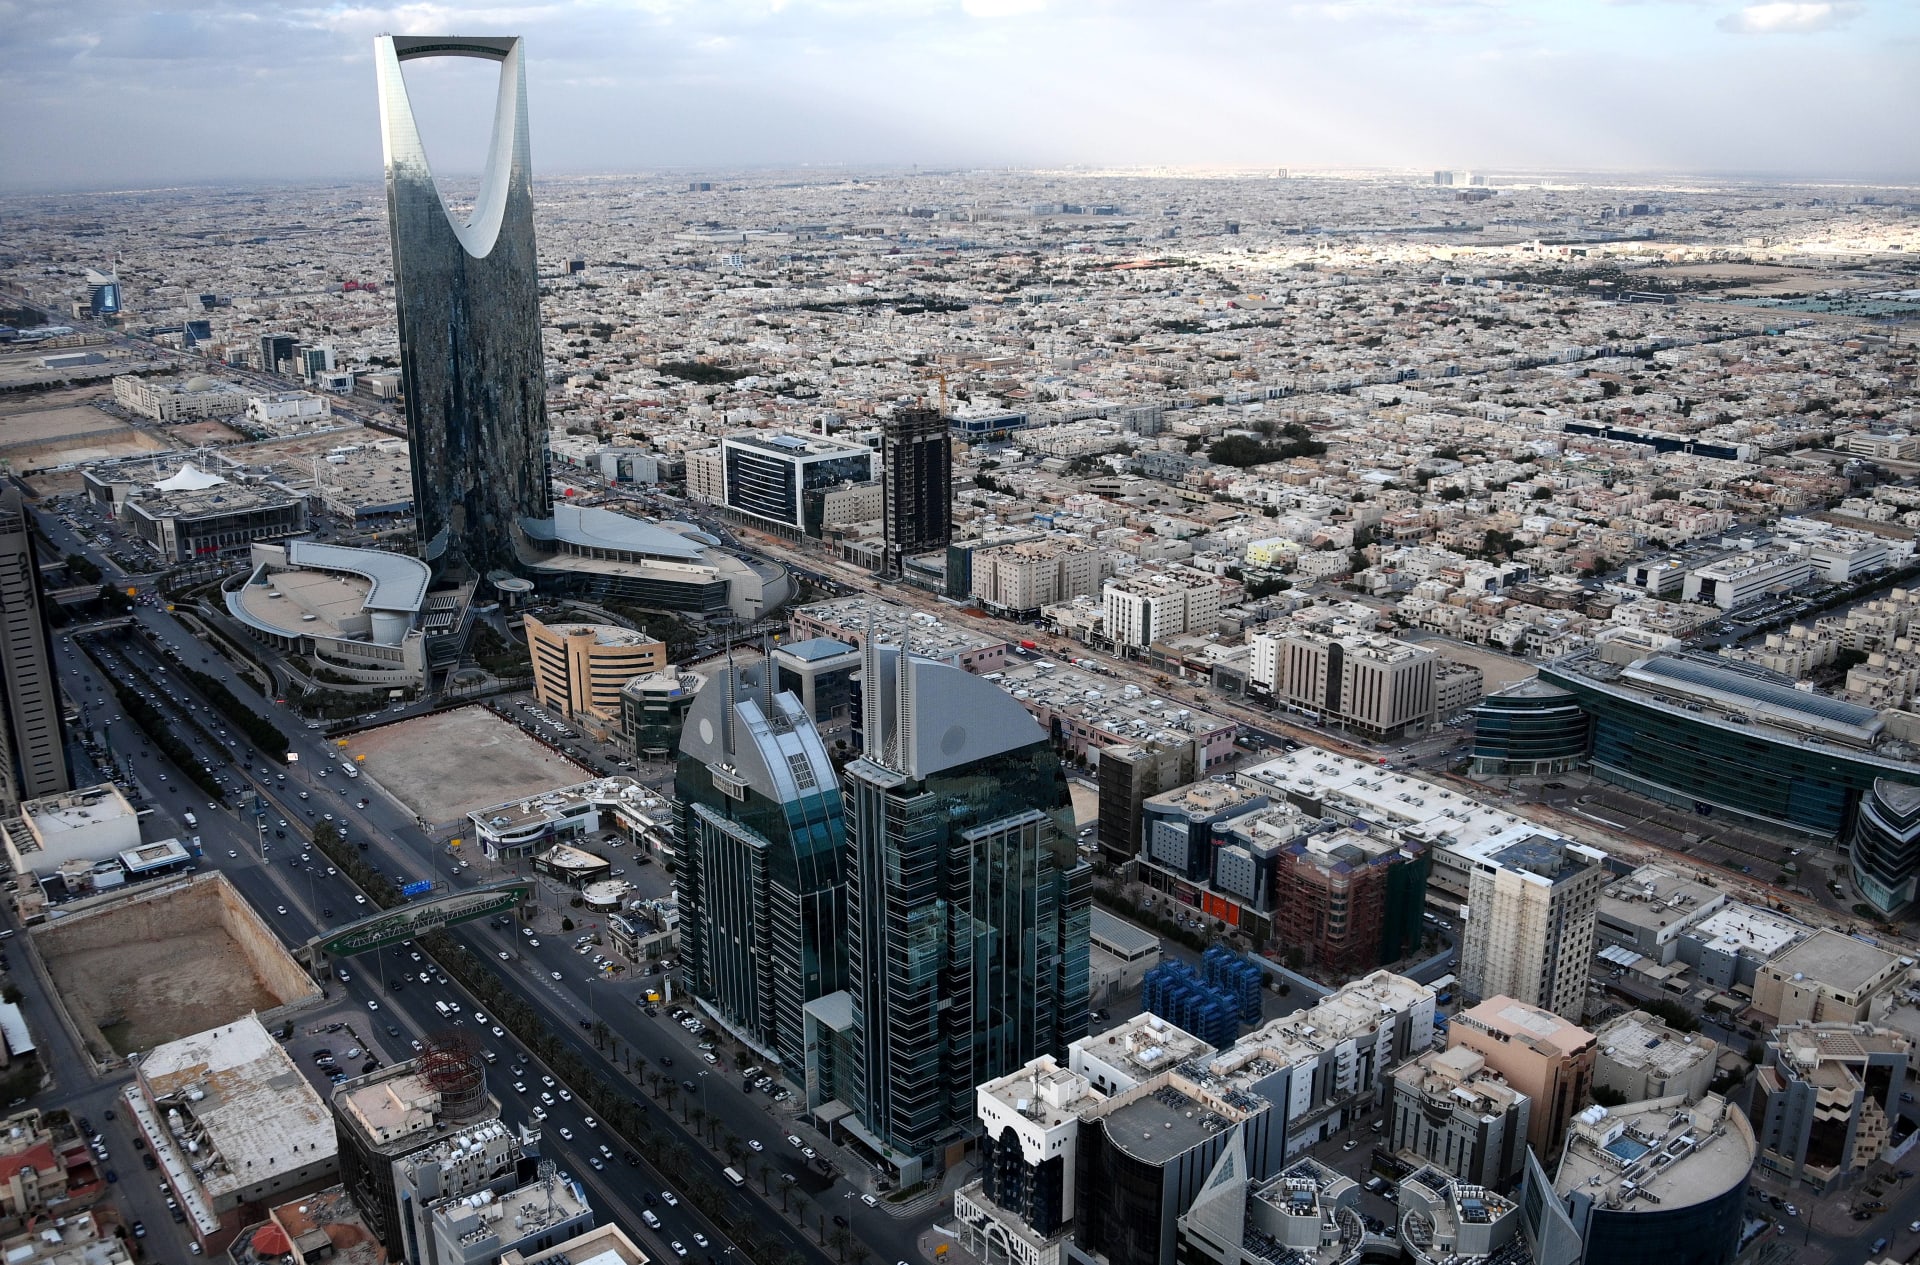 صورة حقيقة وقوع انفجار في العاصمة السعودية الرياض الان